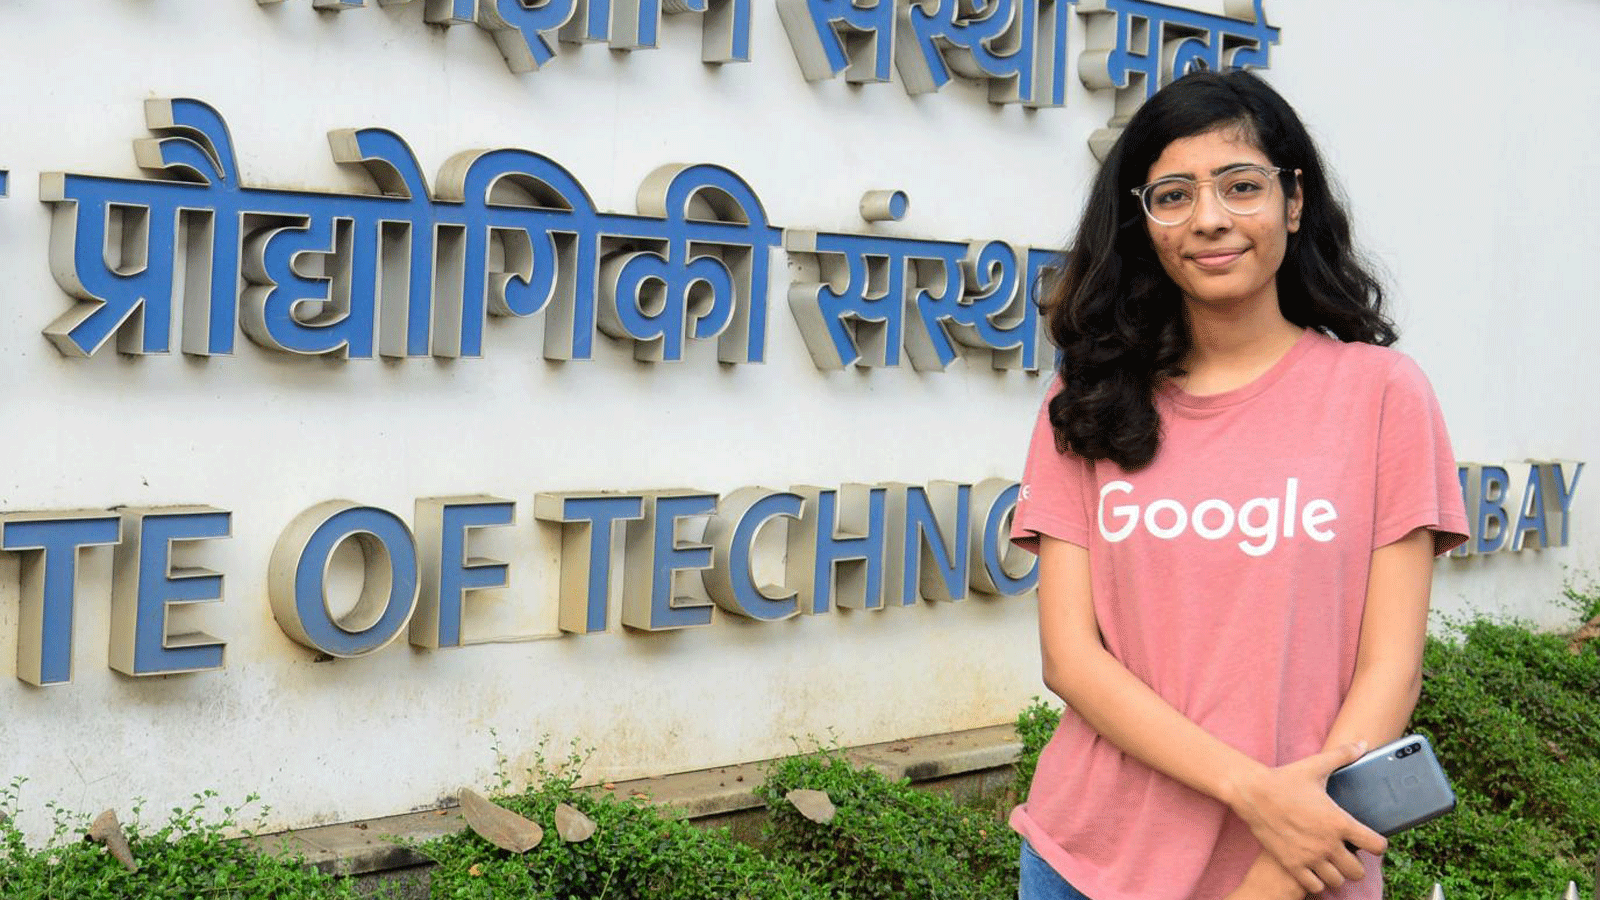 شيفاني ناندجاونكار، طالبة تبلغ من العمر 22 عامًا في المعهد الهندي للتكنولوجيا في بومباي